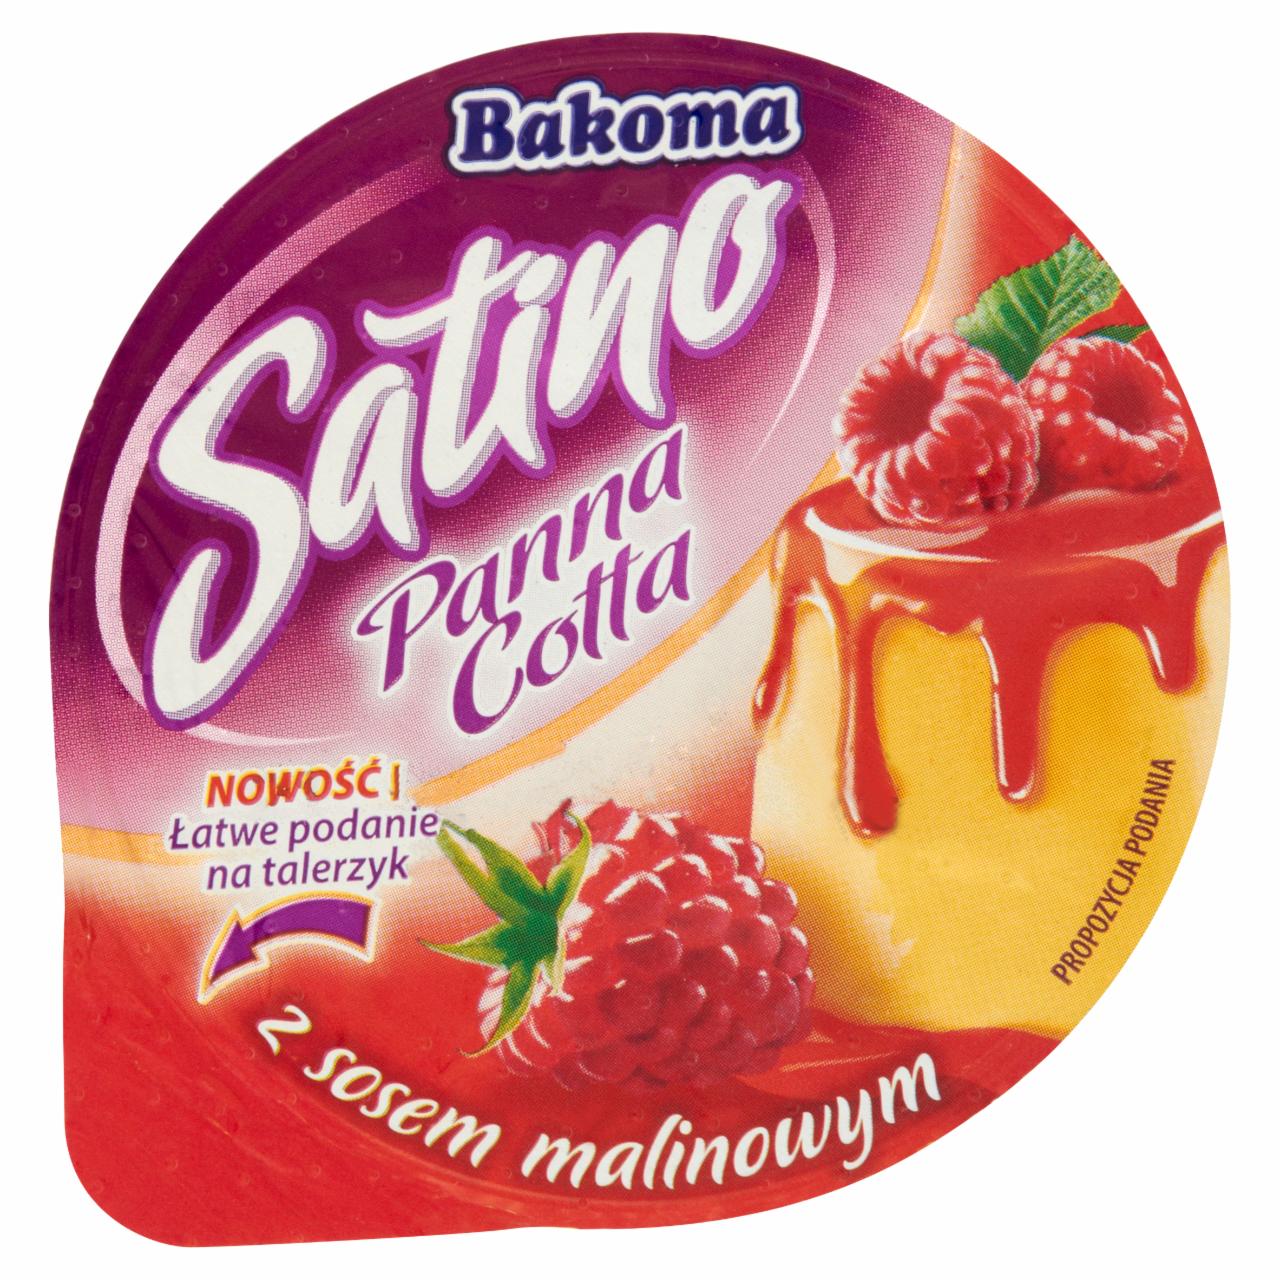 Zdjęcia - Bakoma Satino Panna Cotta z sosem malinowym 140 g